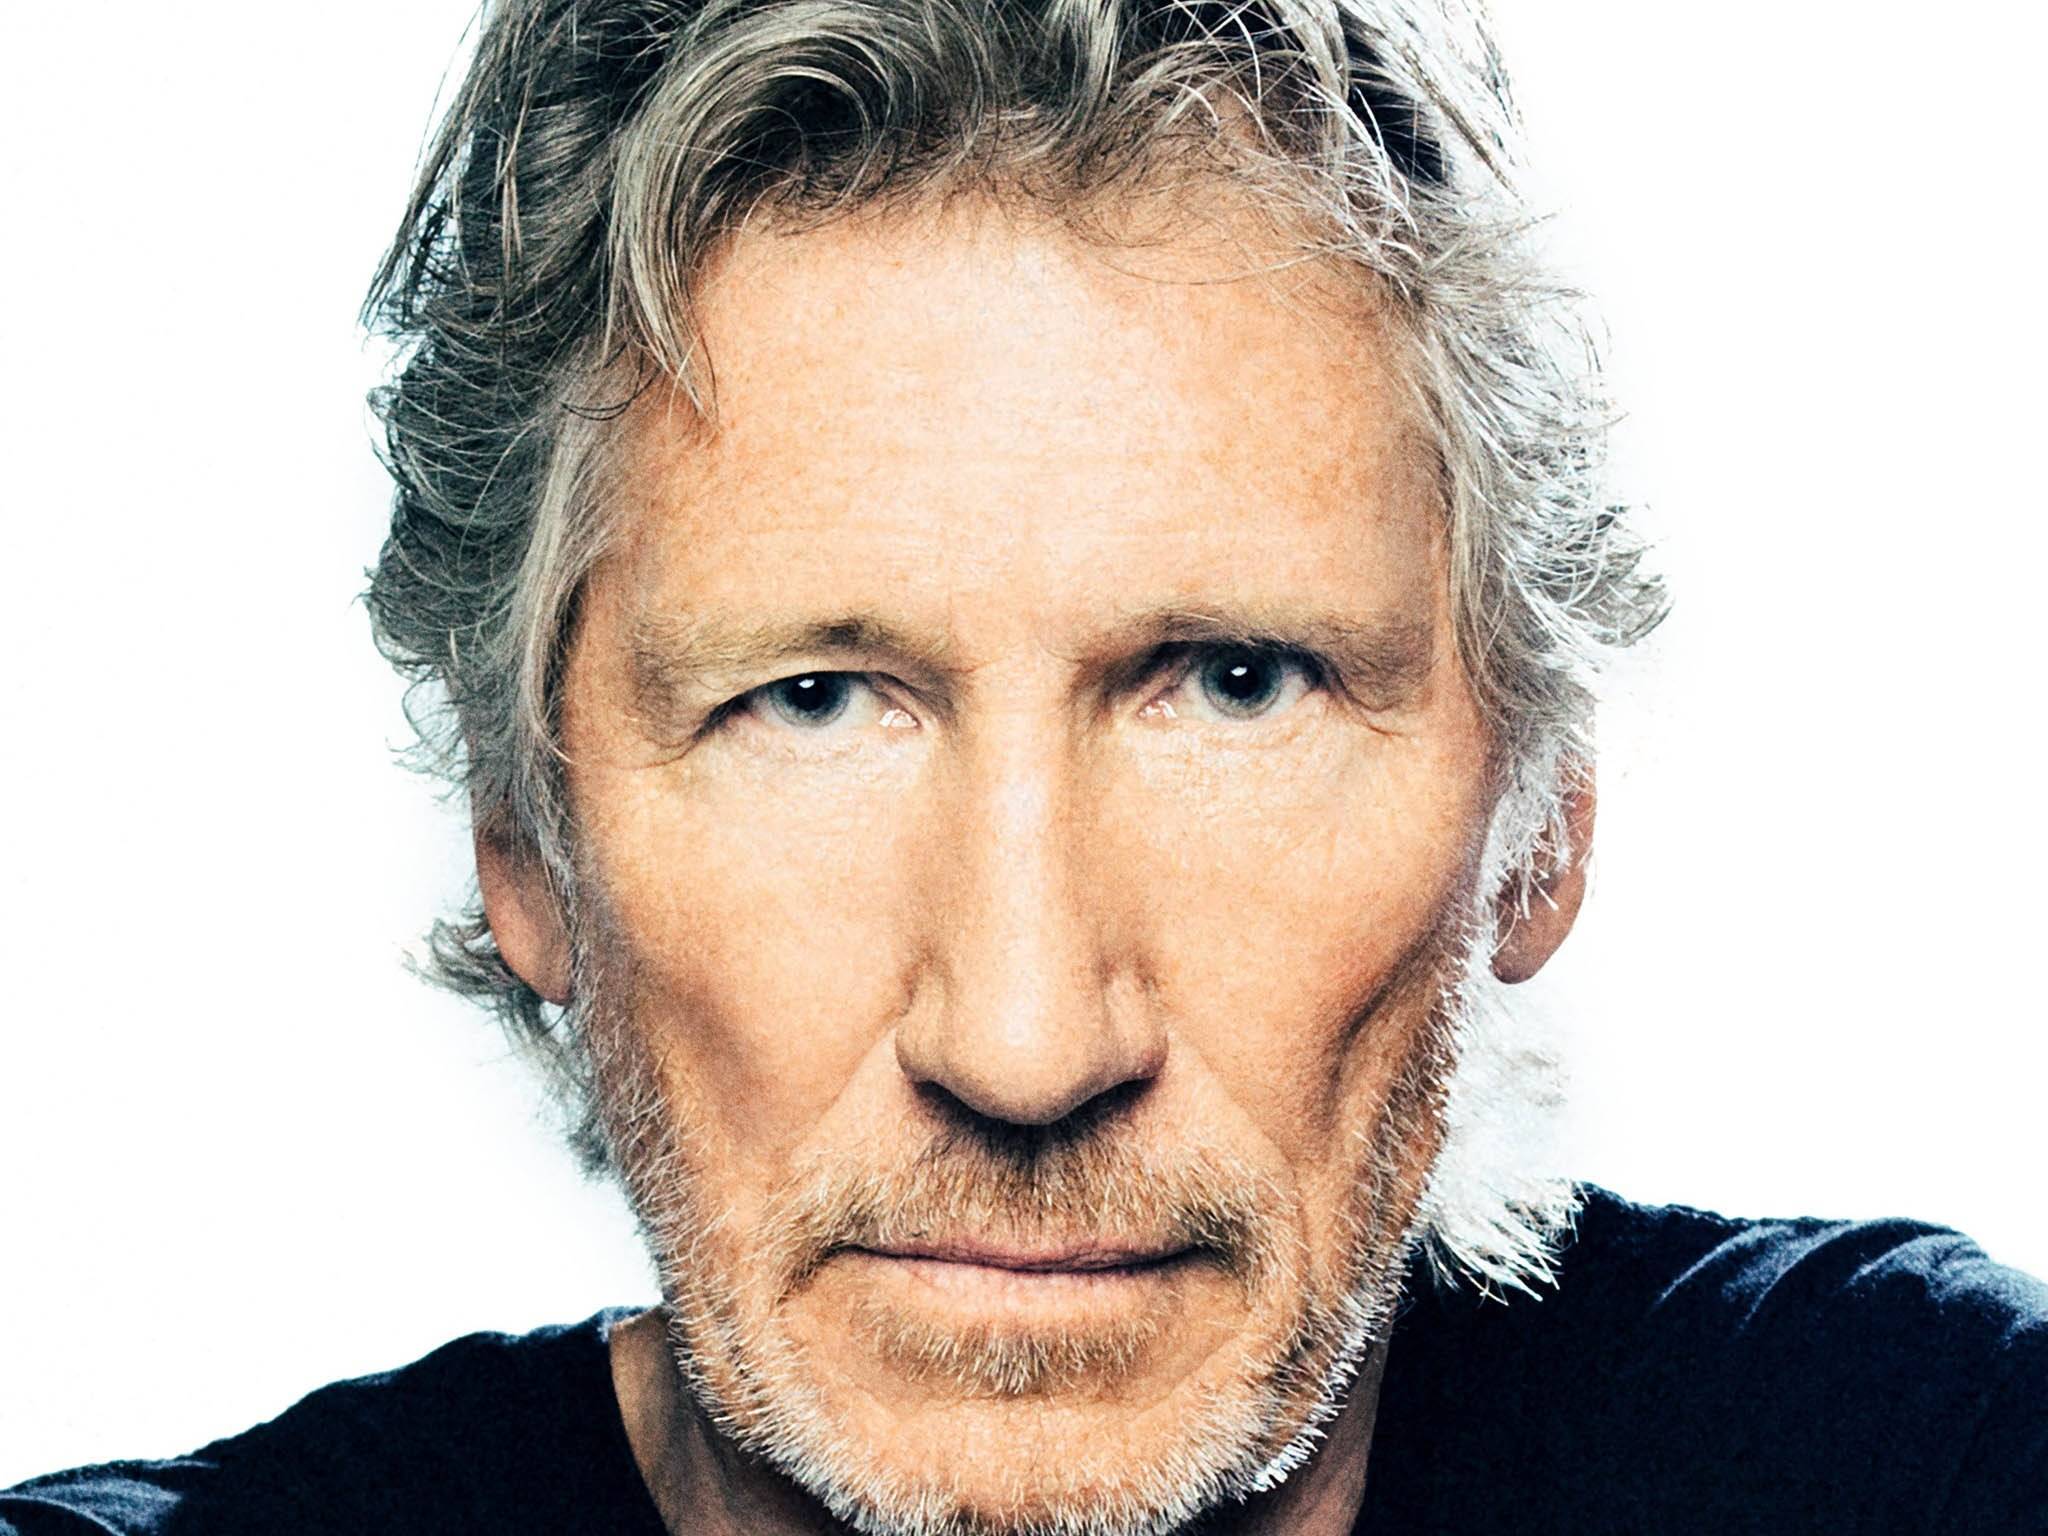 Roger Waters, bassista e cofondatore dei Pink Floyd, ha dichiarato di voler suonare "The Wall" lungo la frontiera Messico-USA